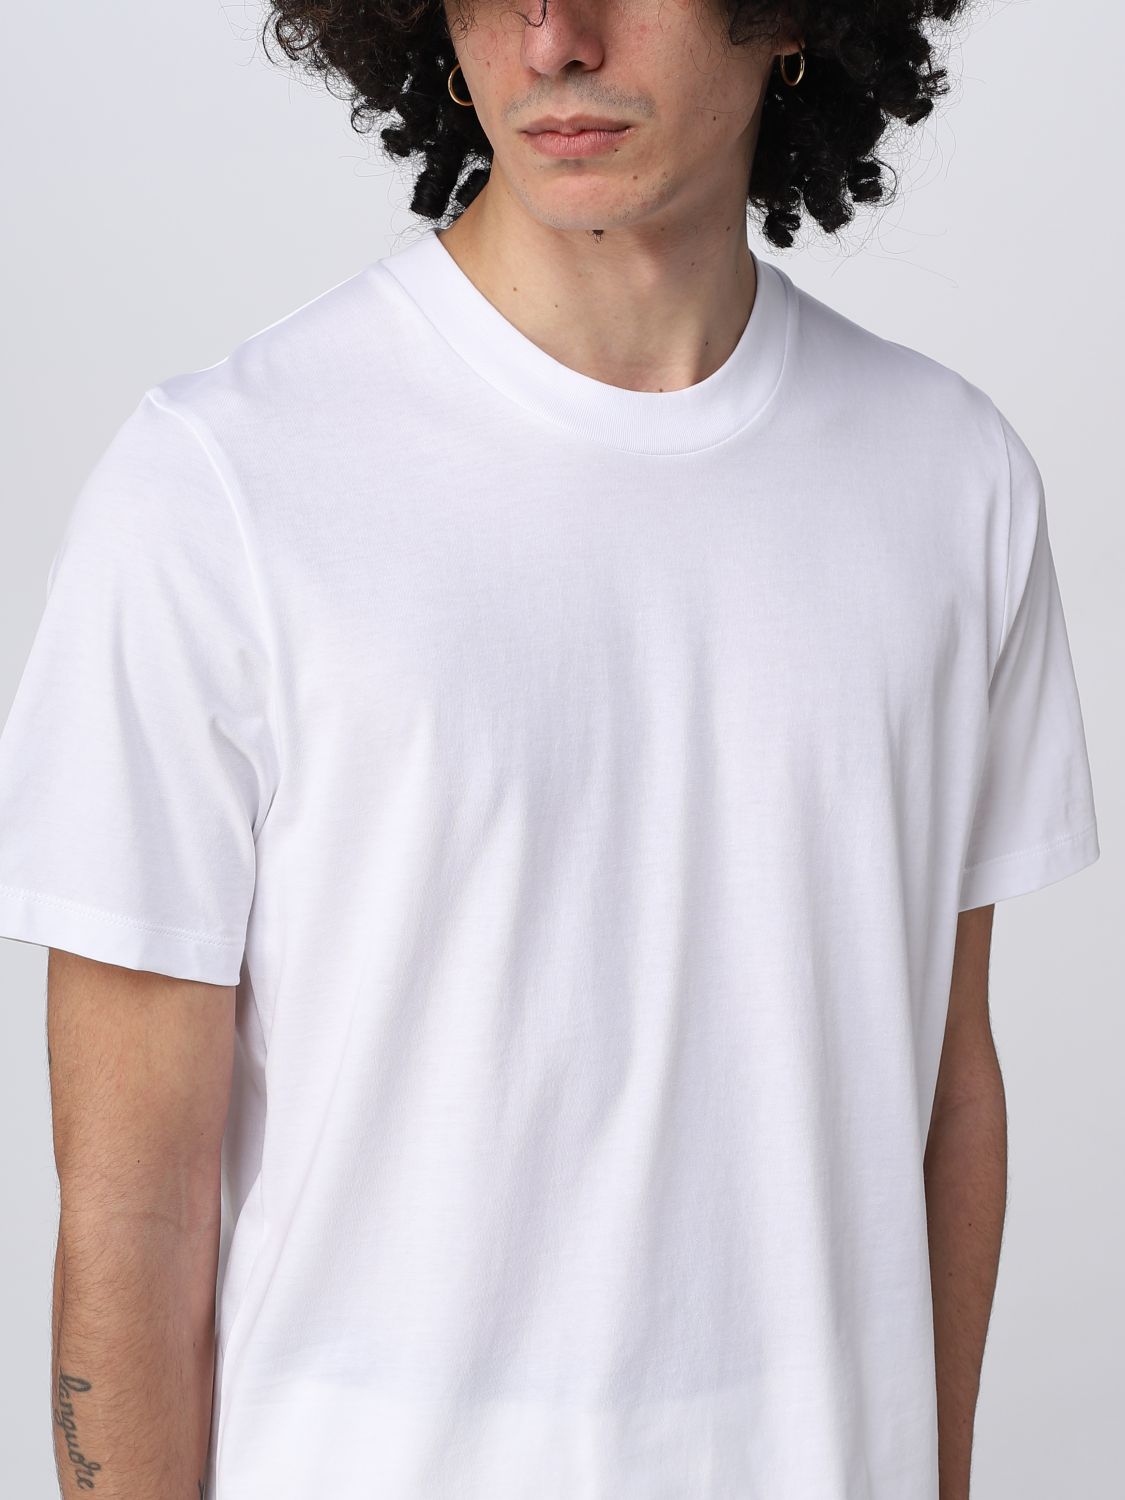 Verheugen etiket vorm JIL SANDER: t-shirt for man - White | Jil Sander t-shirt J21GC0004J45084  online on GIGLIO.COM